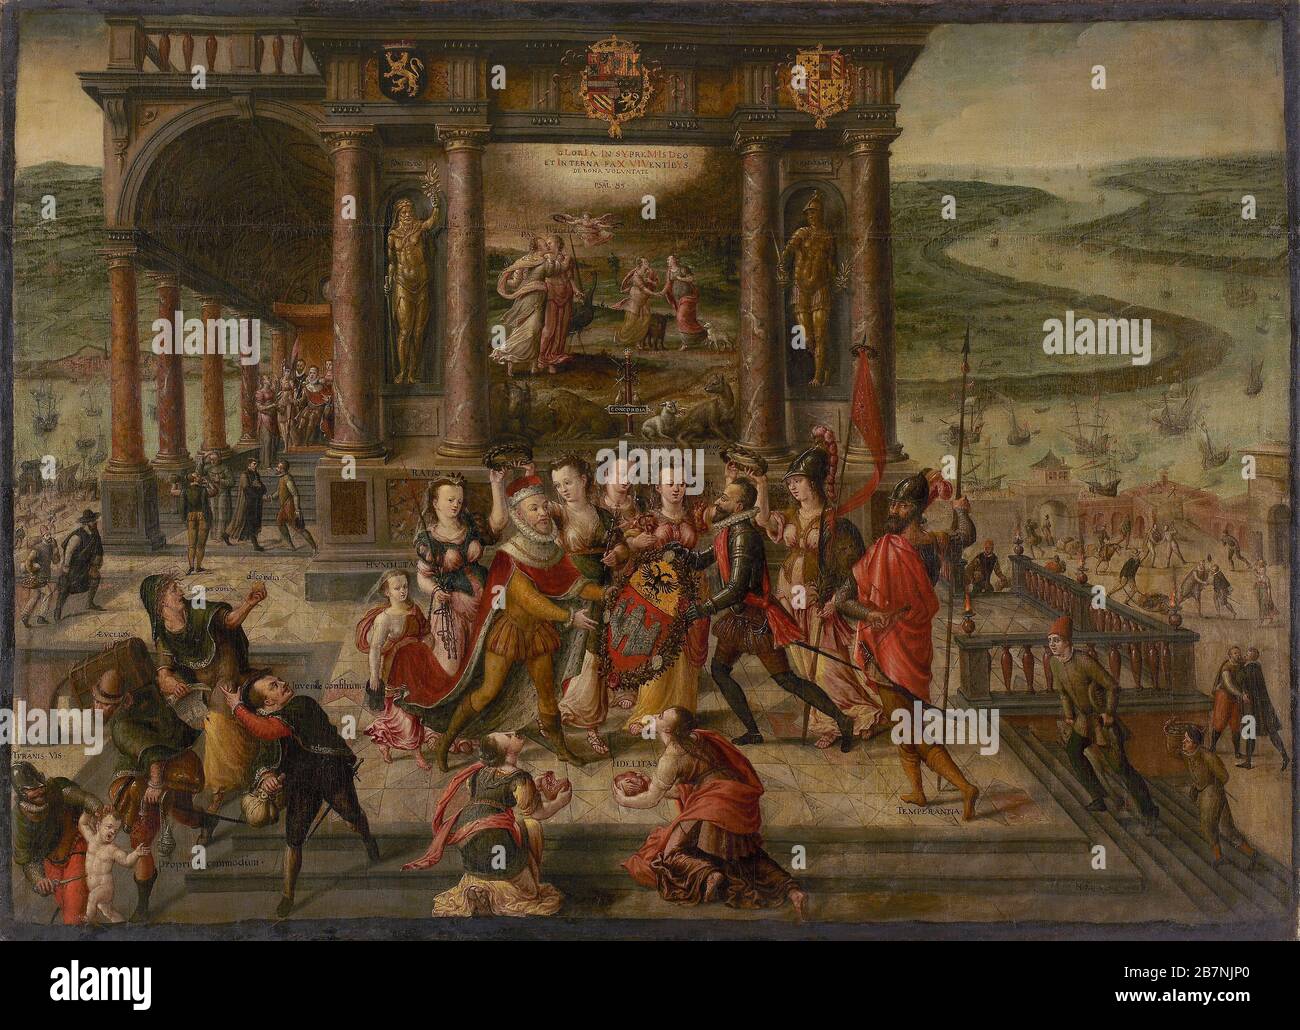 Allegorie auf den Sturz von Antwerpen am 17. August 1585, 1585-1586. Gefunden in der Sammlung des Museums aan de Stroom. Stockfoto